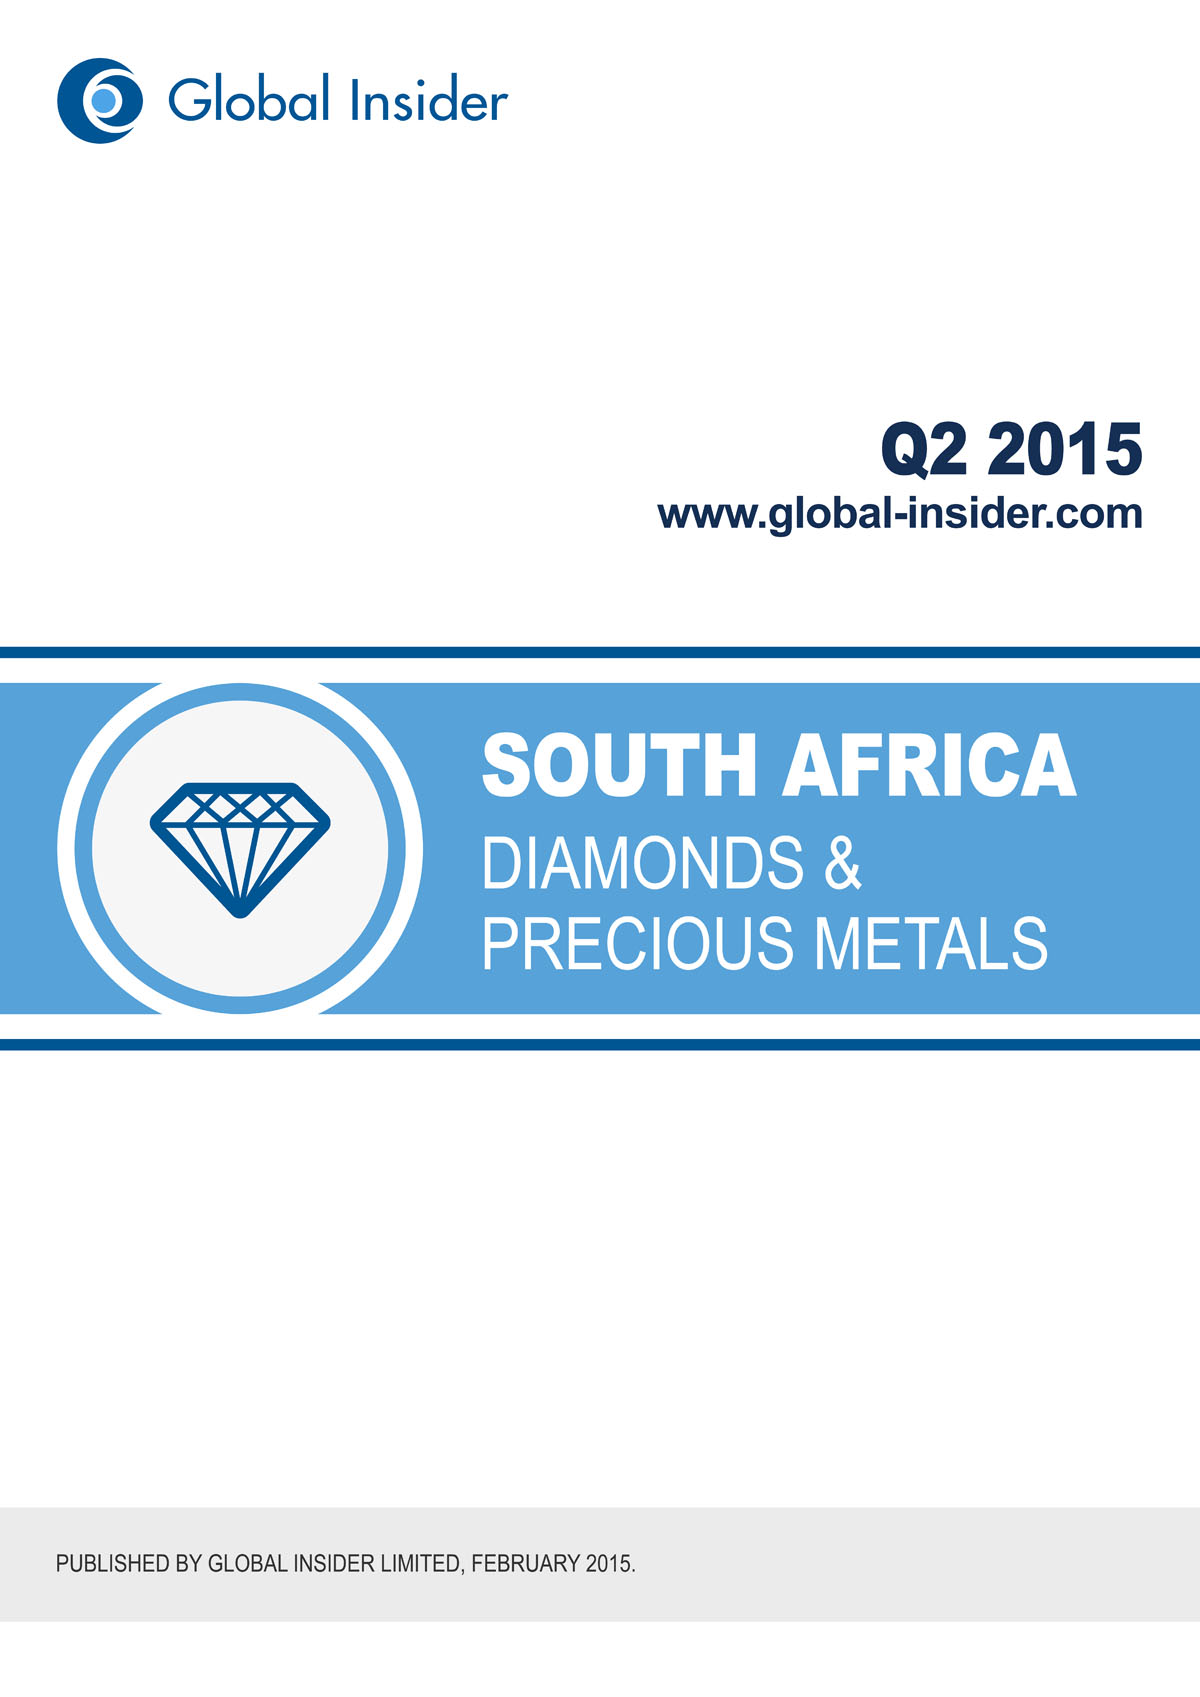 South Africa Diamonds & Precious Metals